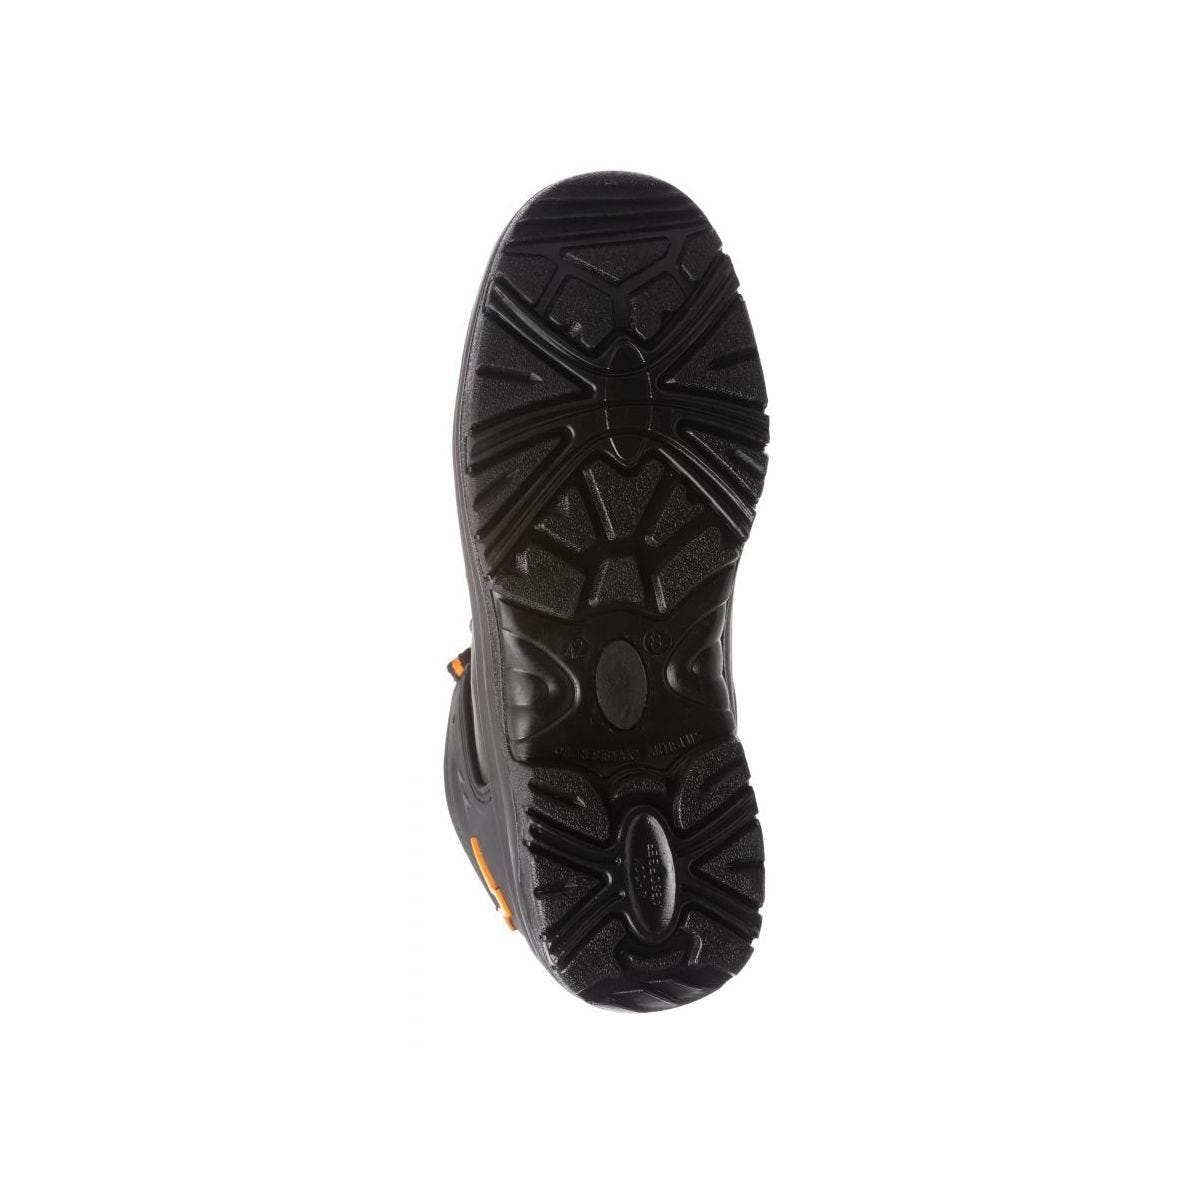 Chaussures de sécurité basses S3 SRC OPAL composite Noir - Coverguard - Taille 43 4